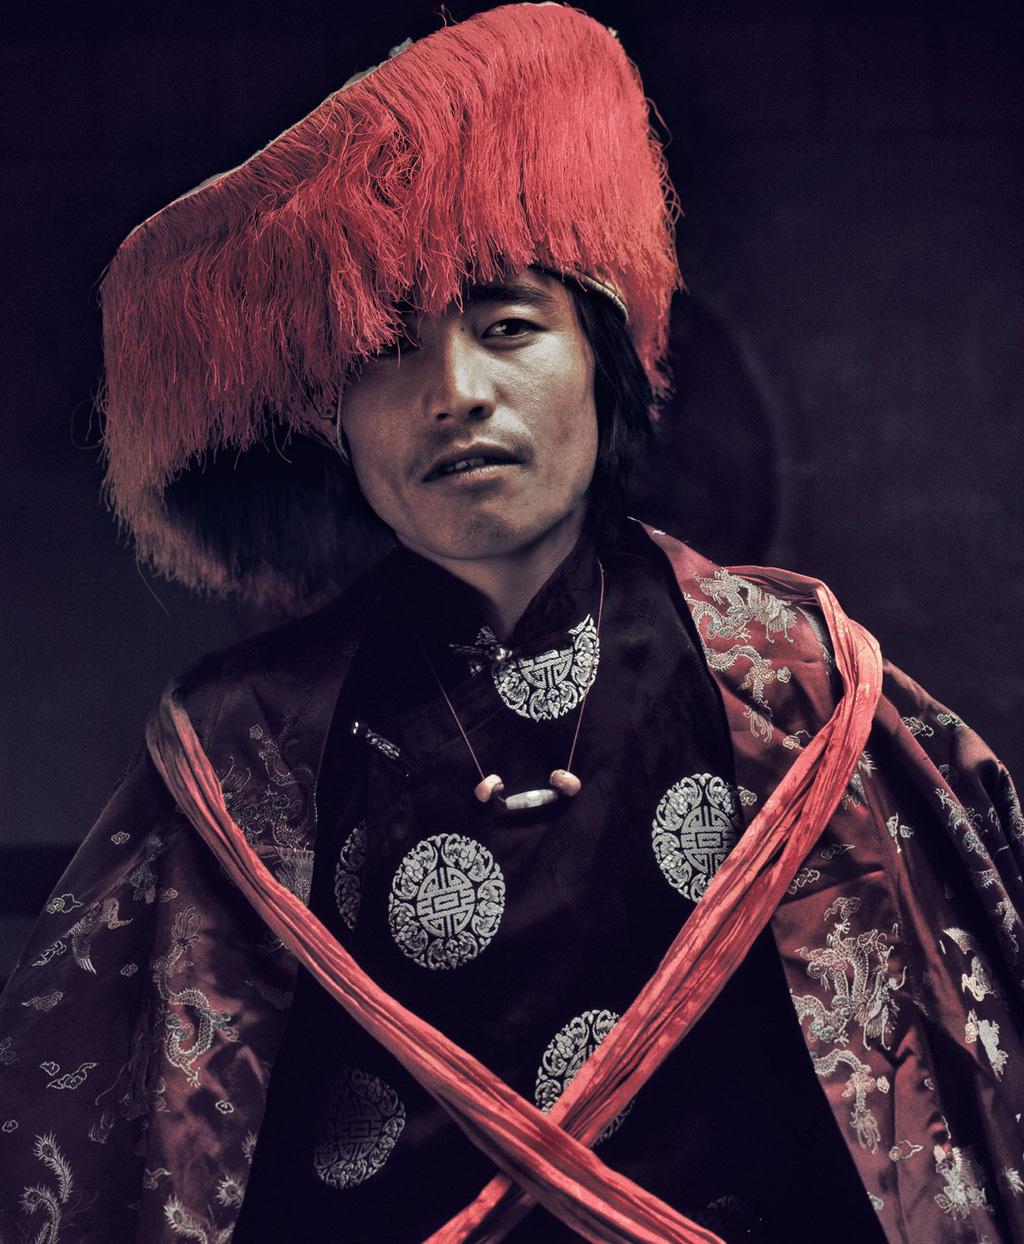 Lạ lùng bộ tộc có anh em một nhà lấy chung vợ ở Tây Tạng - Ảnh 4.